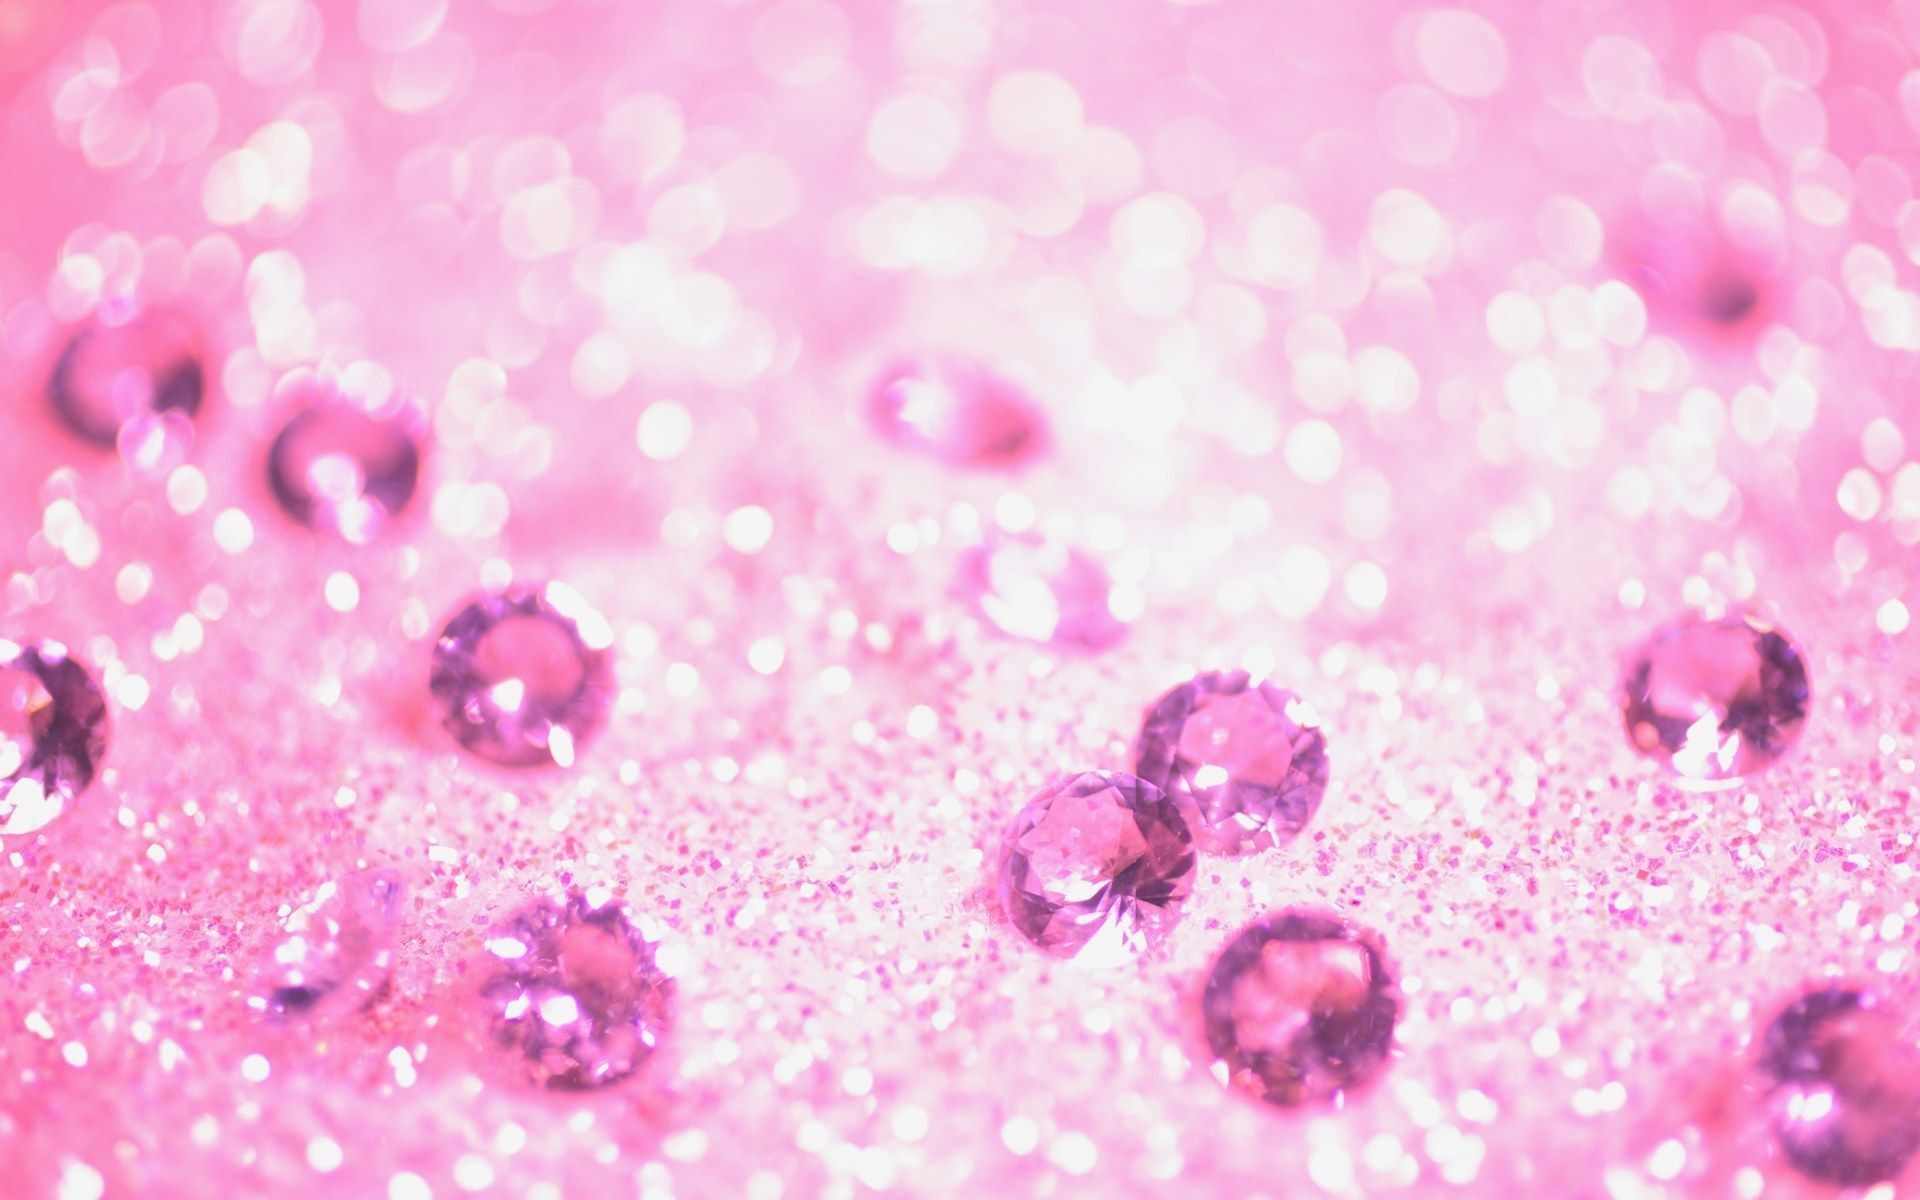 Kim cương hồng nền rực rỡ với sắc hồng nữ tính, sẽ khiến bạn thăng hoa trong niềm đam mê sự sang trọng và quý phái. Đừng bỏ qua hình ảnh tuyệt đẹp này!